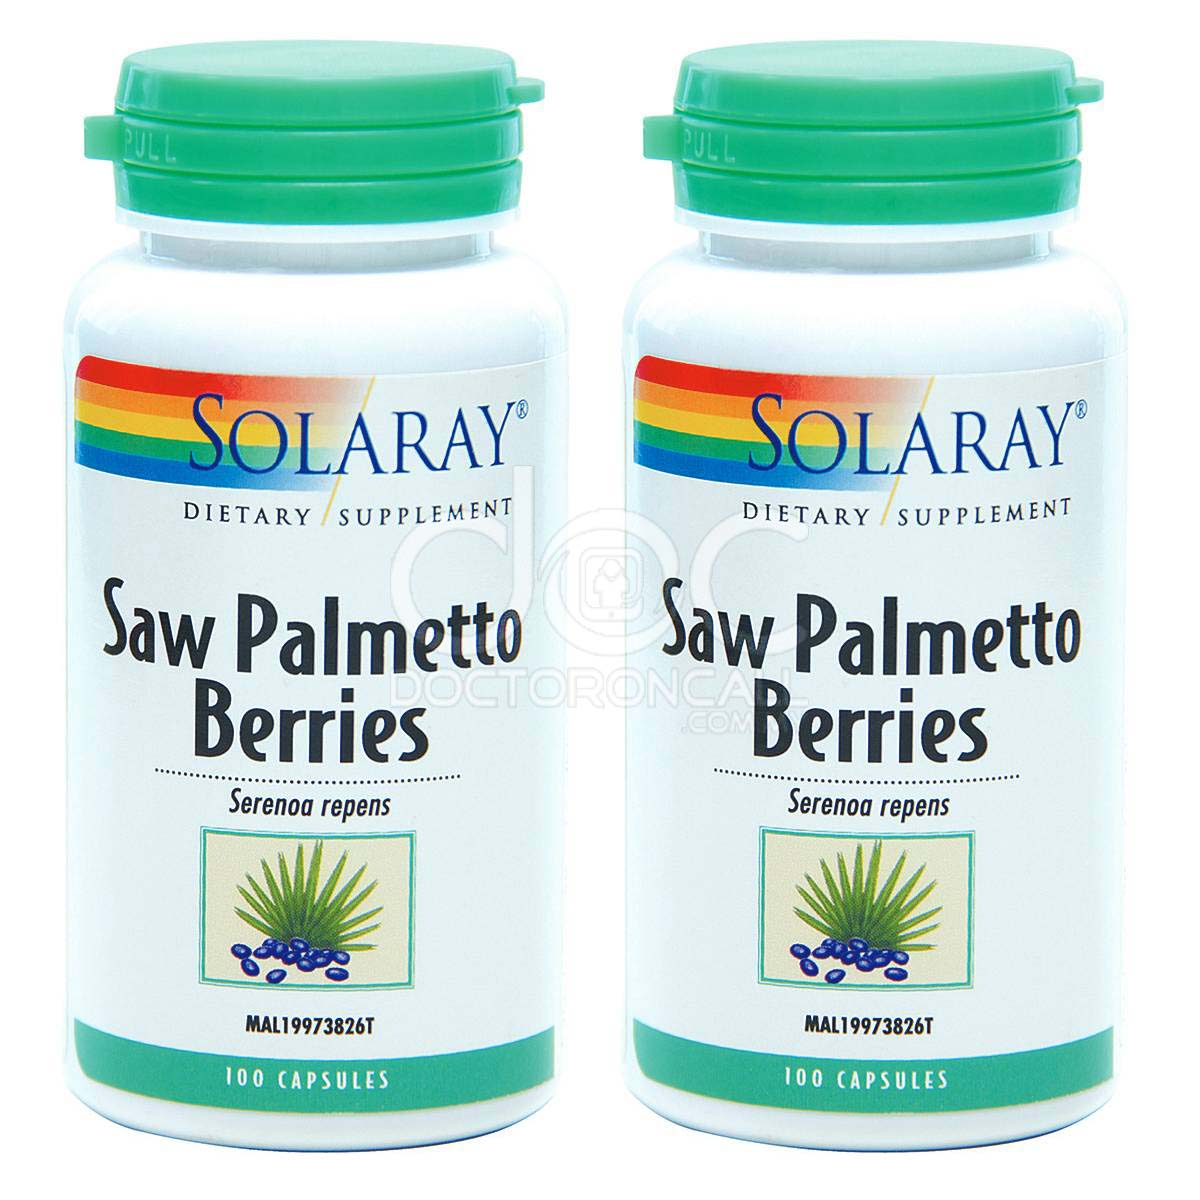 Solaray Saw Palmetto Berries Capsule 100s x2 - DoctorOnCall Online Pharmacy